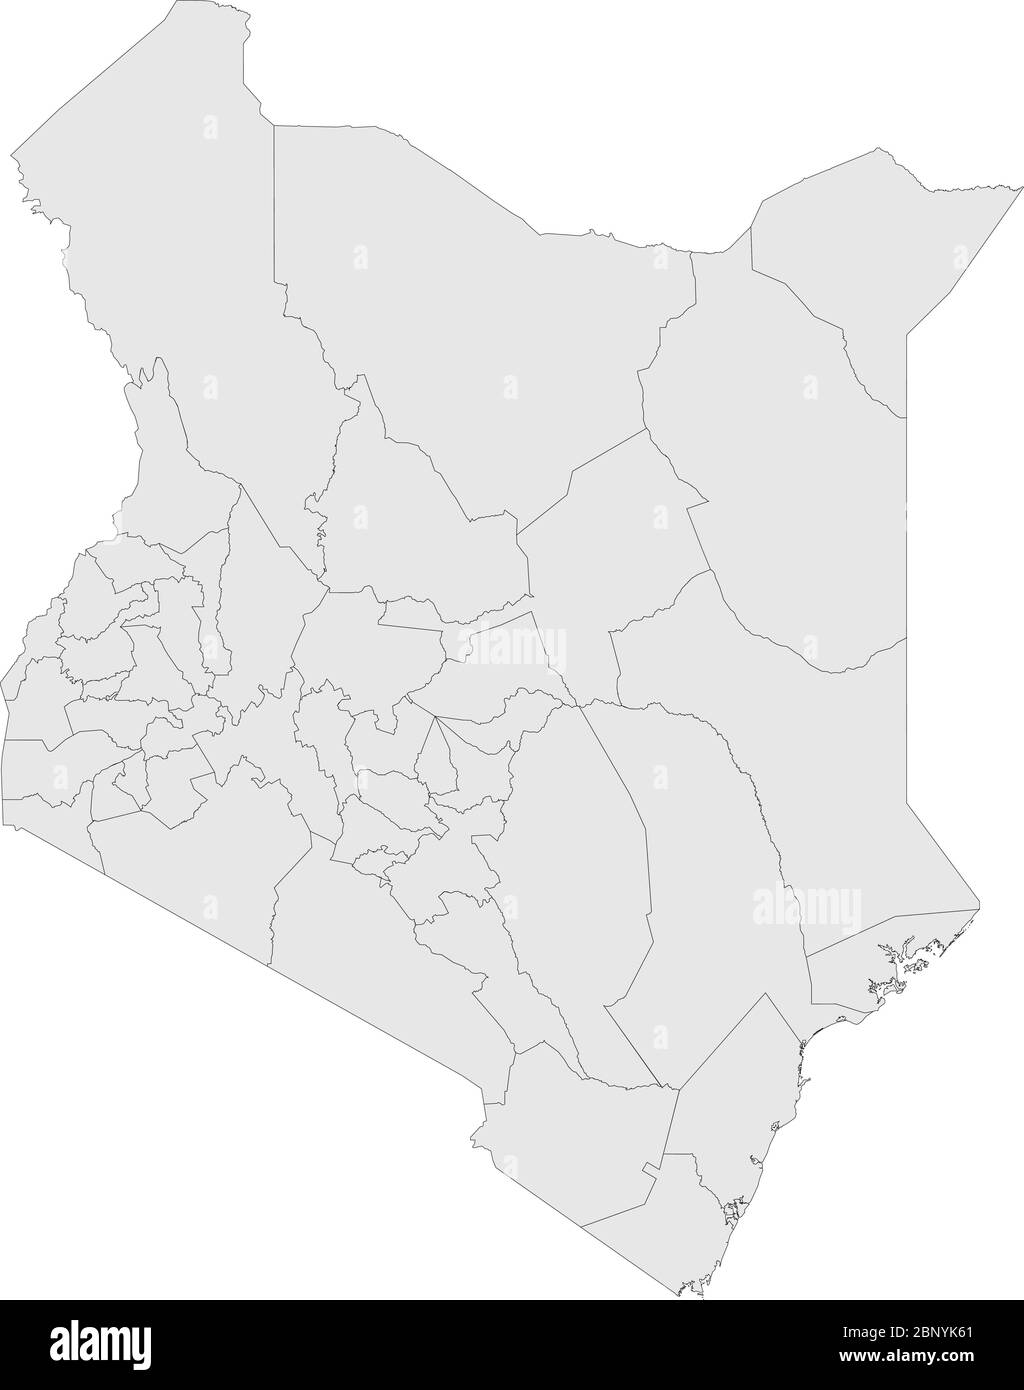 Mappa del paese del Kenya. Sfondo grigio chiaro. Perfetto per concetti aziendali, sfondi, sfondo, grafico, etichetta, adesivo, presentazione e sfondo. Illustrazione Vettoriale